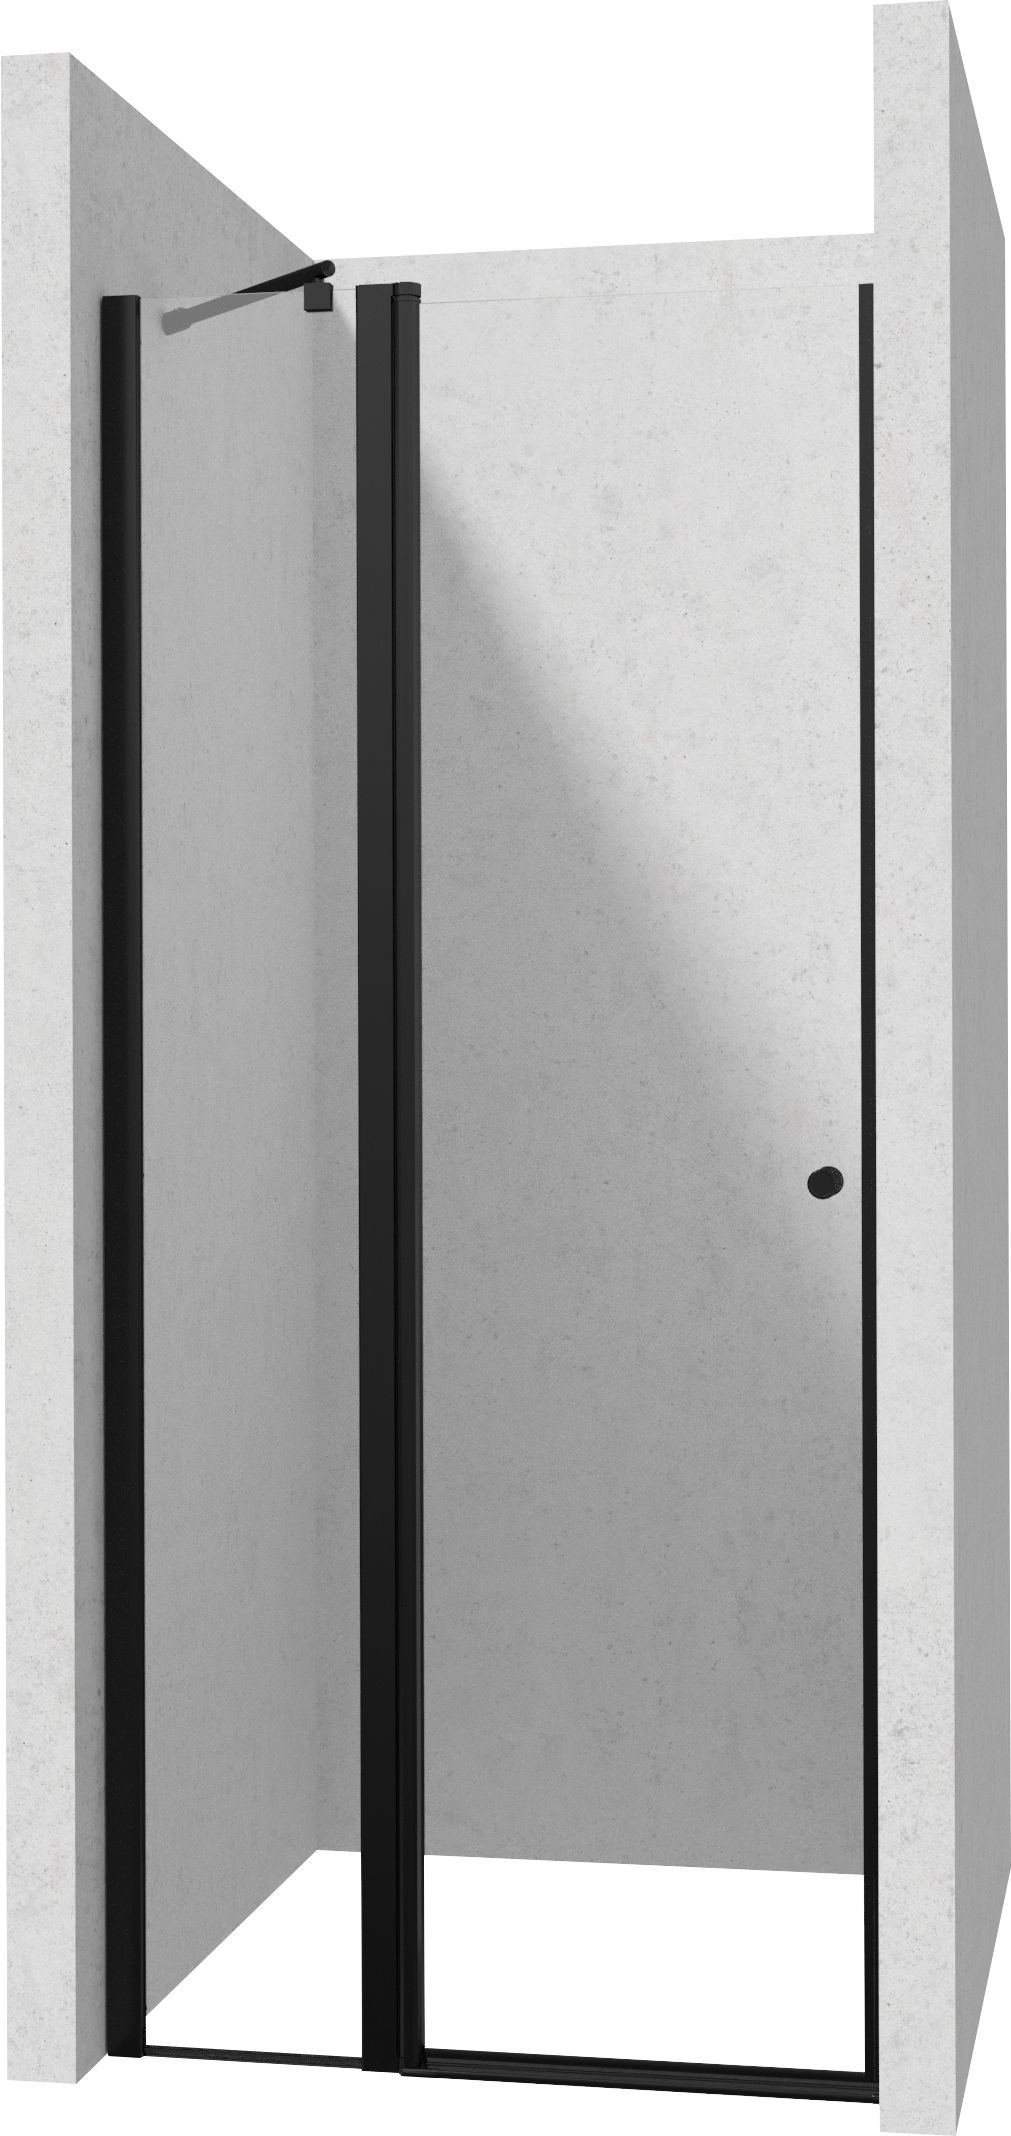 Drzwi prysznicowe 100 cm - uchylne - KTSUN43P - Główne zdjęcie produktowe